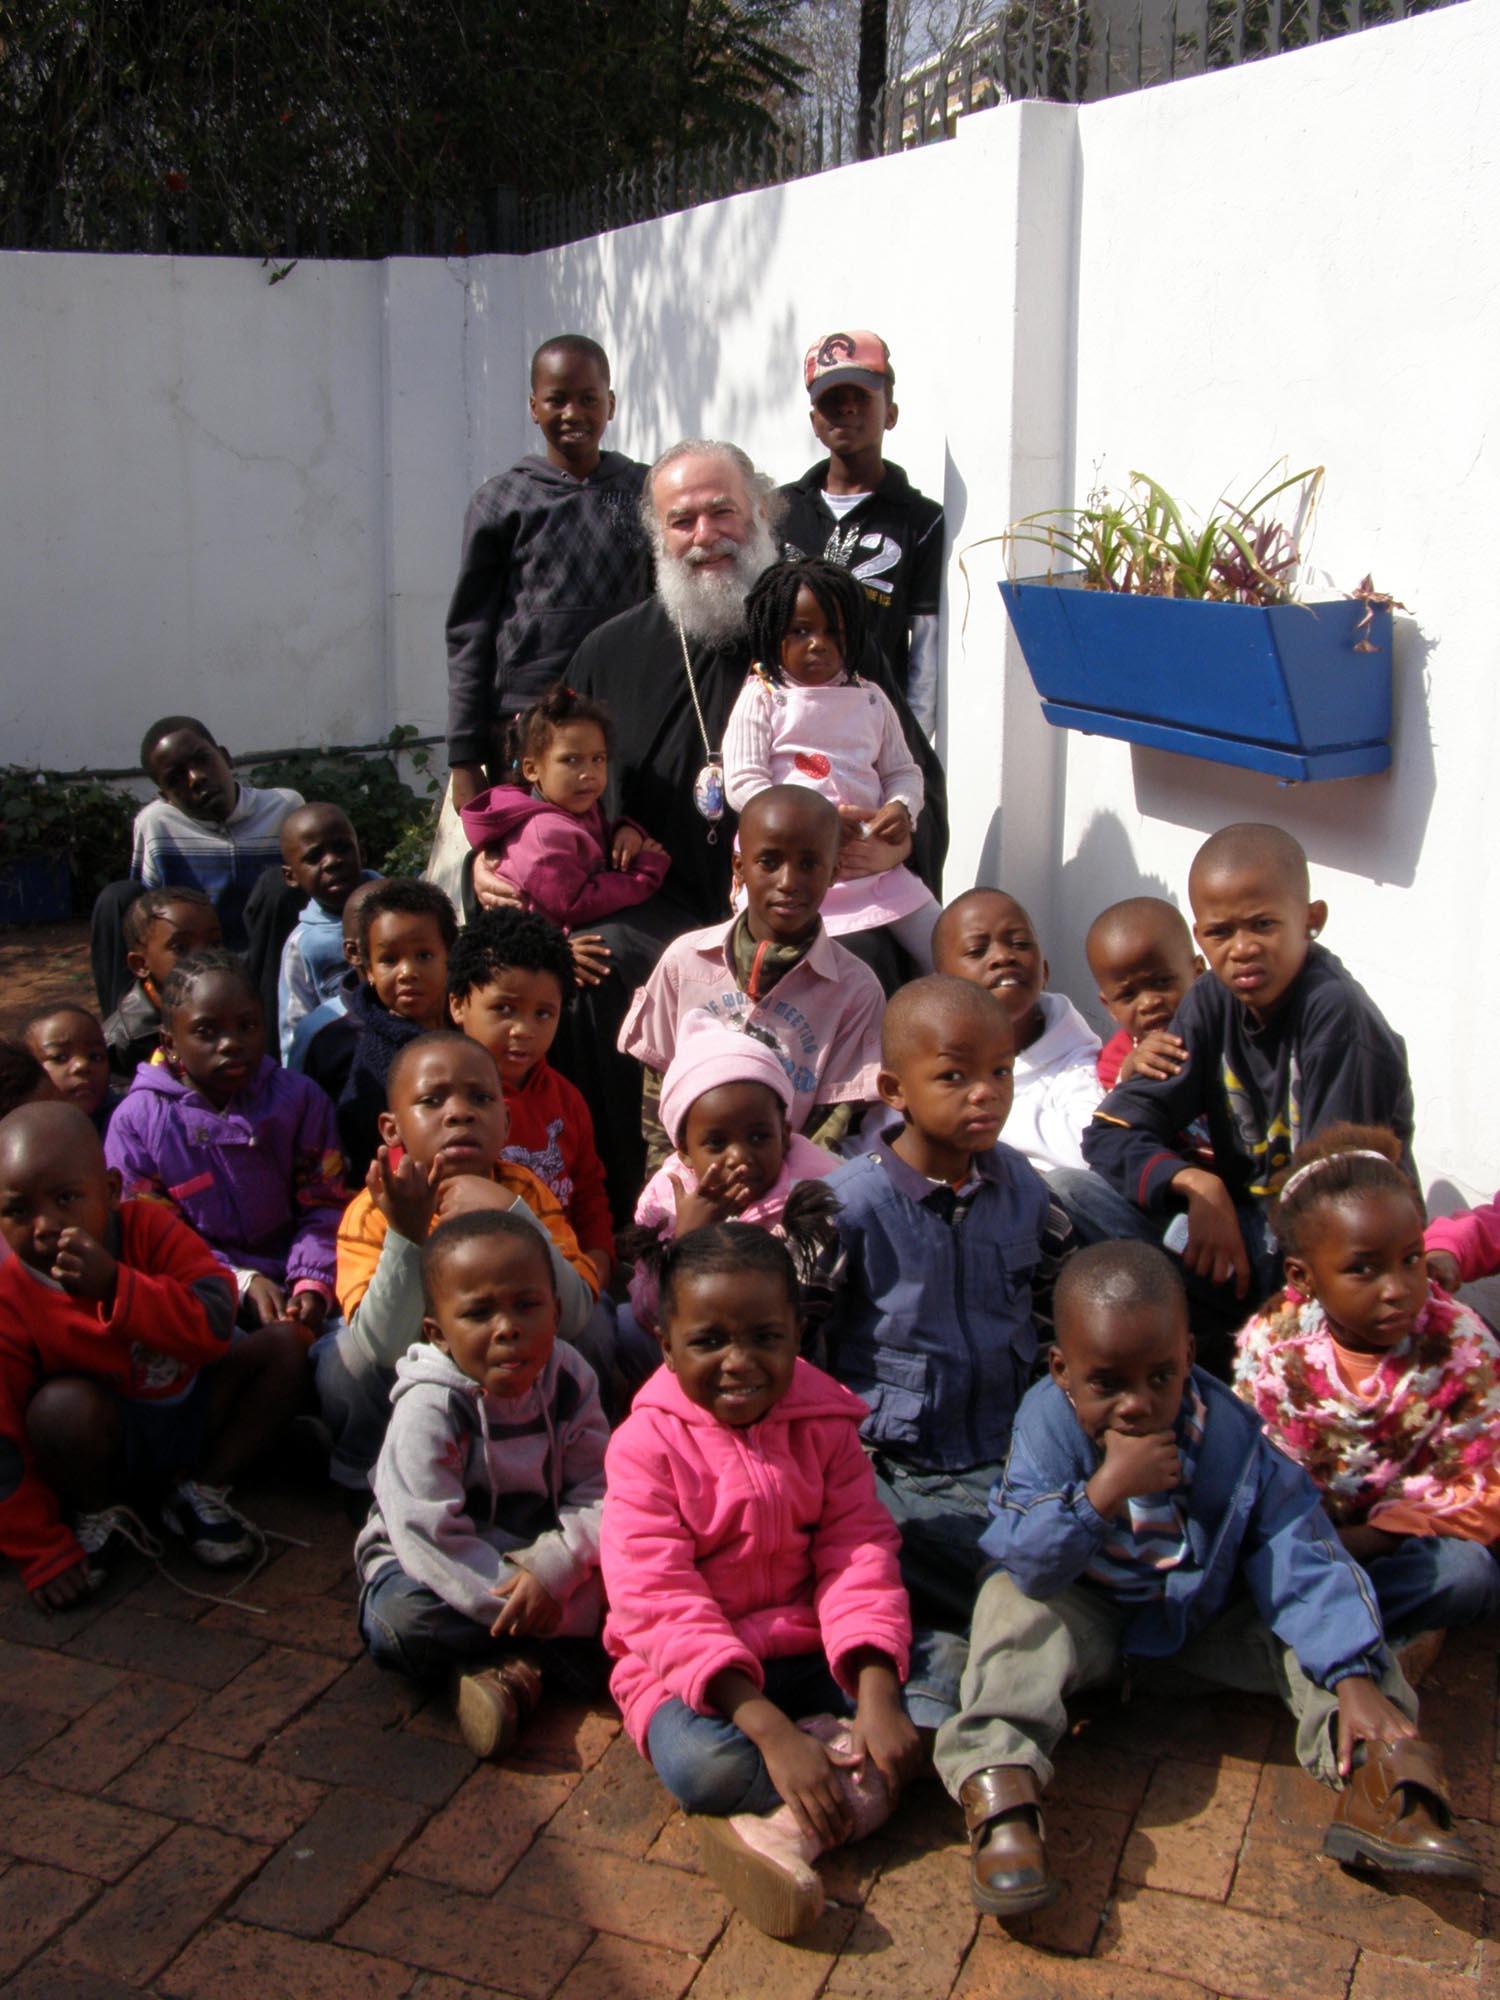 Ιεραποστολική επίσκεψη της Α.Θ.Μ. στην Νότια Αφρική - Η Α.Θ.Μ. στο εκκλησιαστικό Ιδρυμα για τα εμπερίστατα παιδιά του Γιοχάνεσμπουργκ.